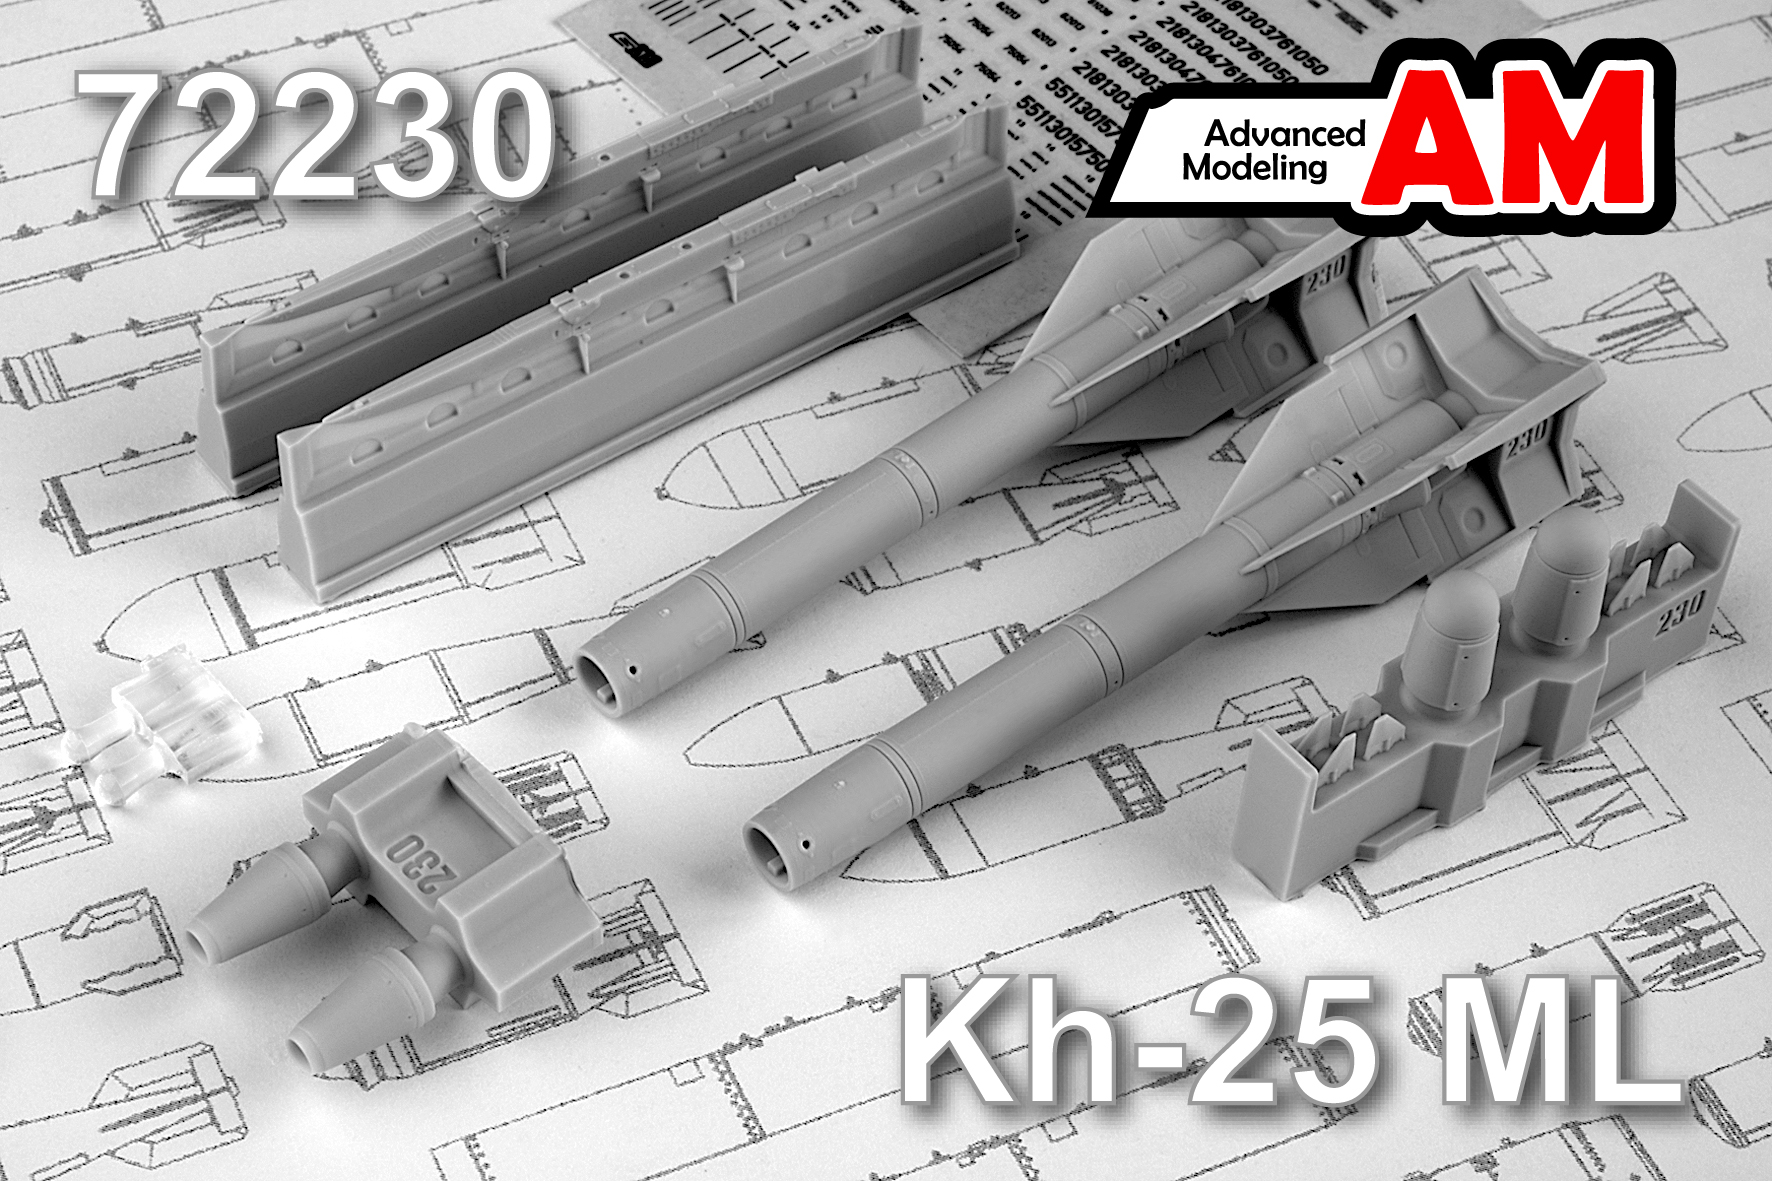 Дополнения из смолы 1/72 Авиационная управляемая ракета Х-25МЛ с АПУ-68УМ2 (Advanced Modeling)